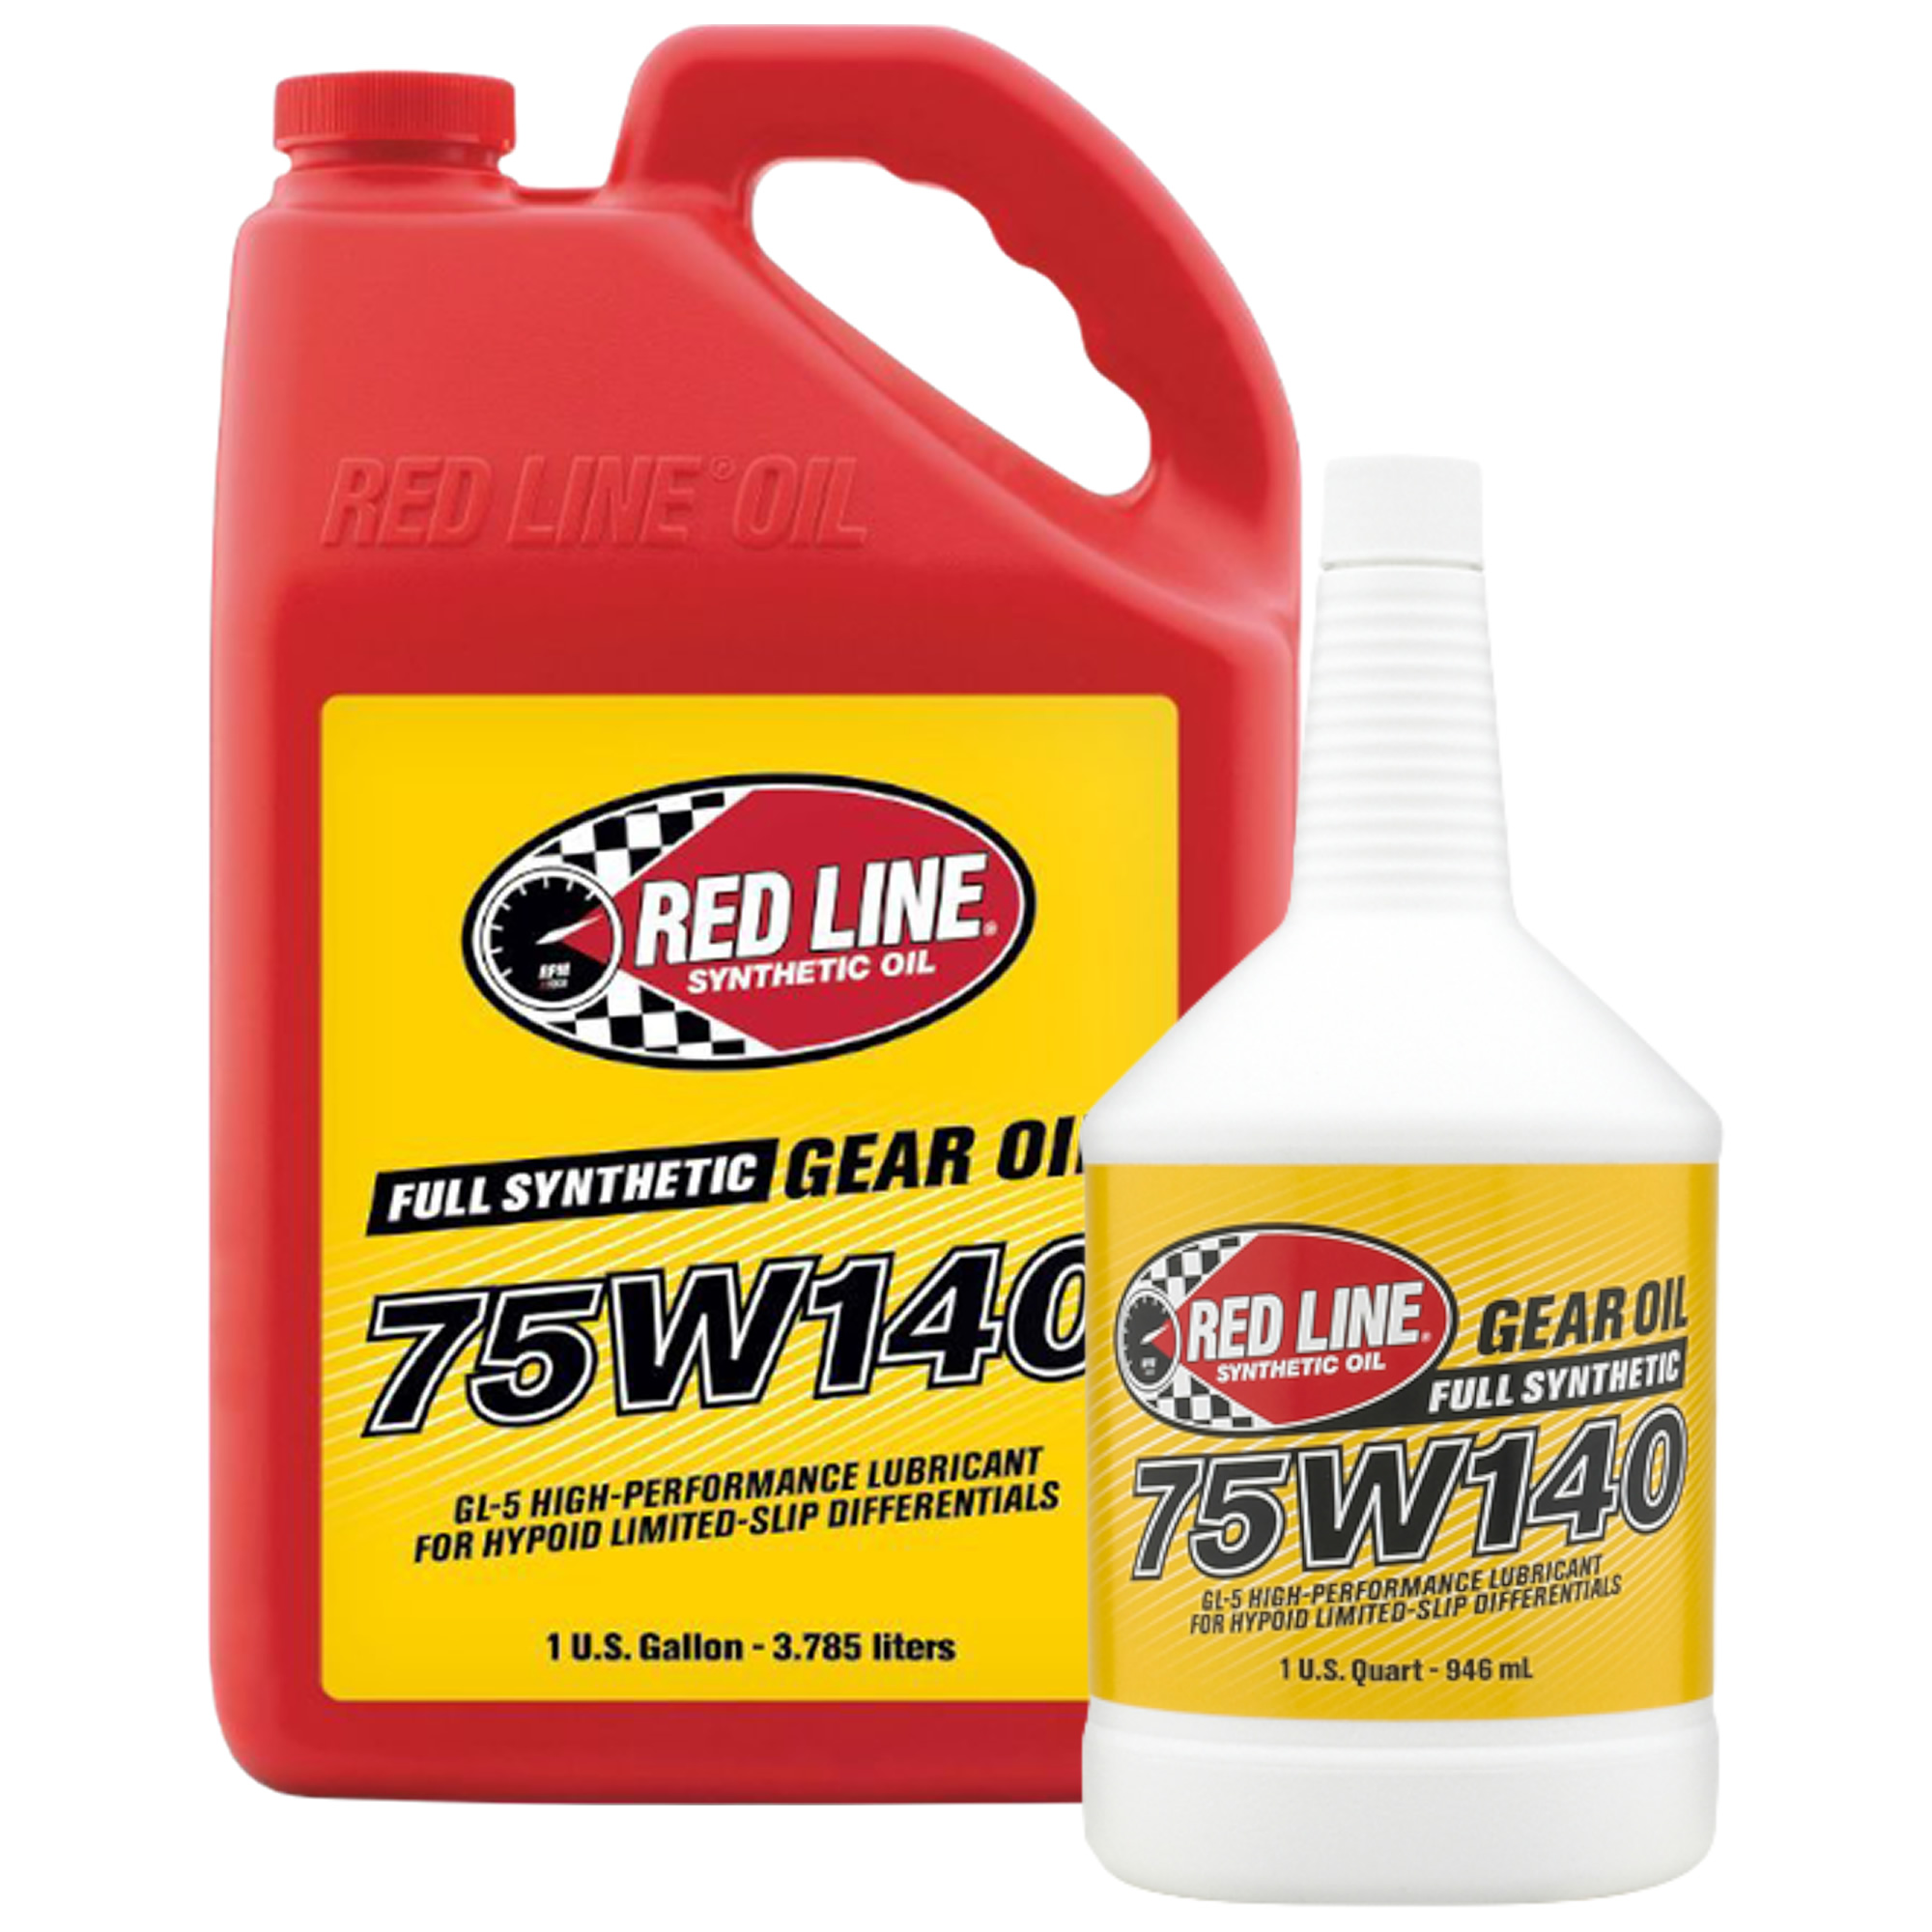 Red Line 75W140 GL-5 Gear Oil